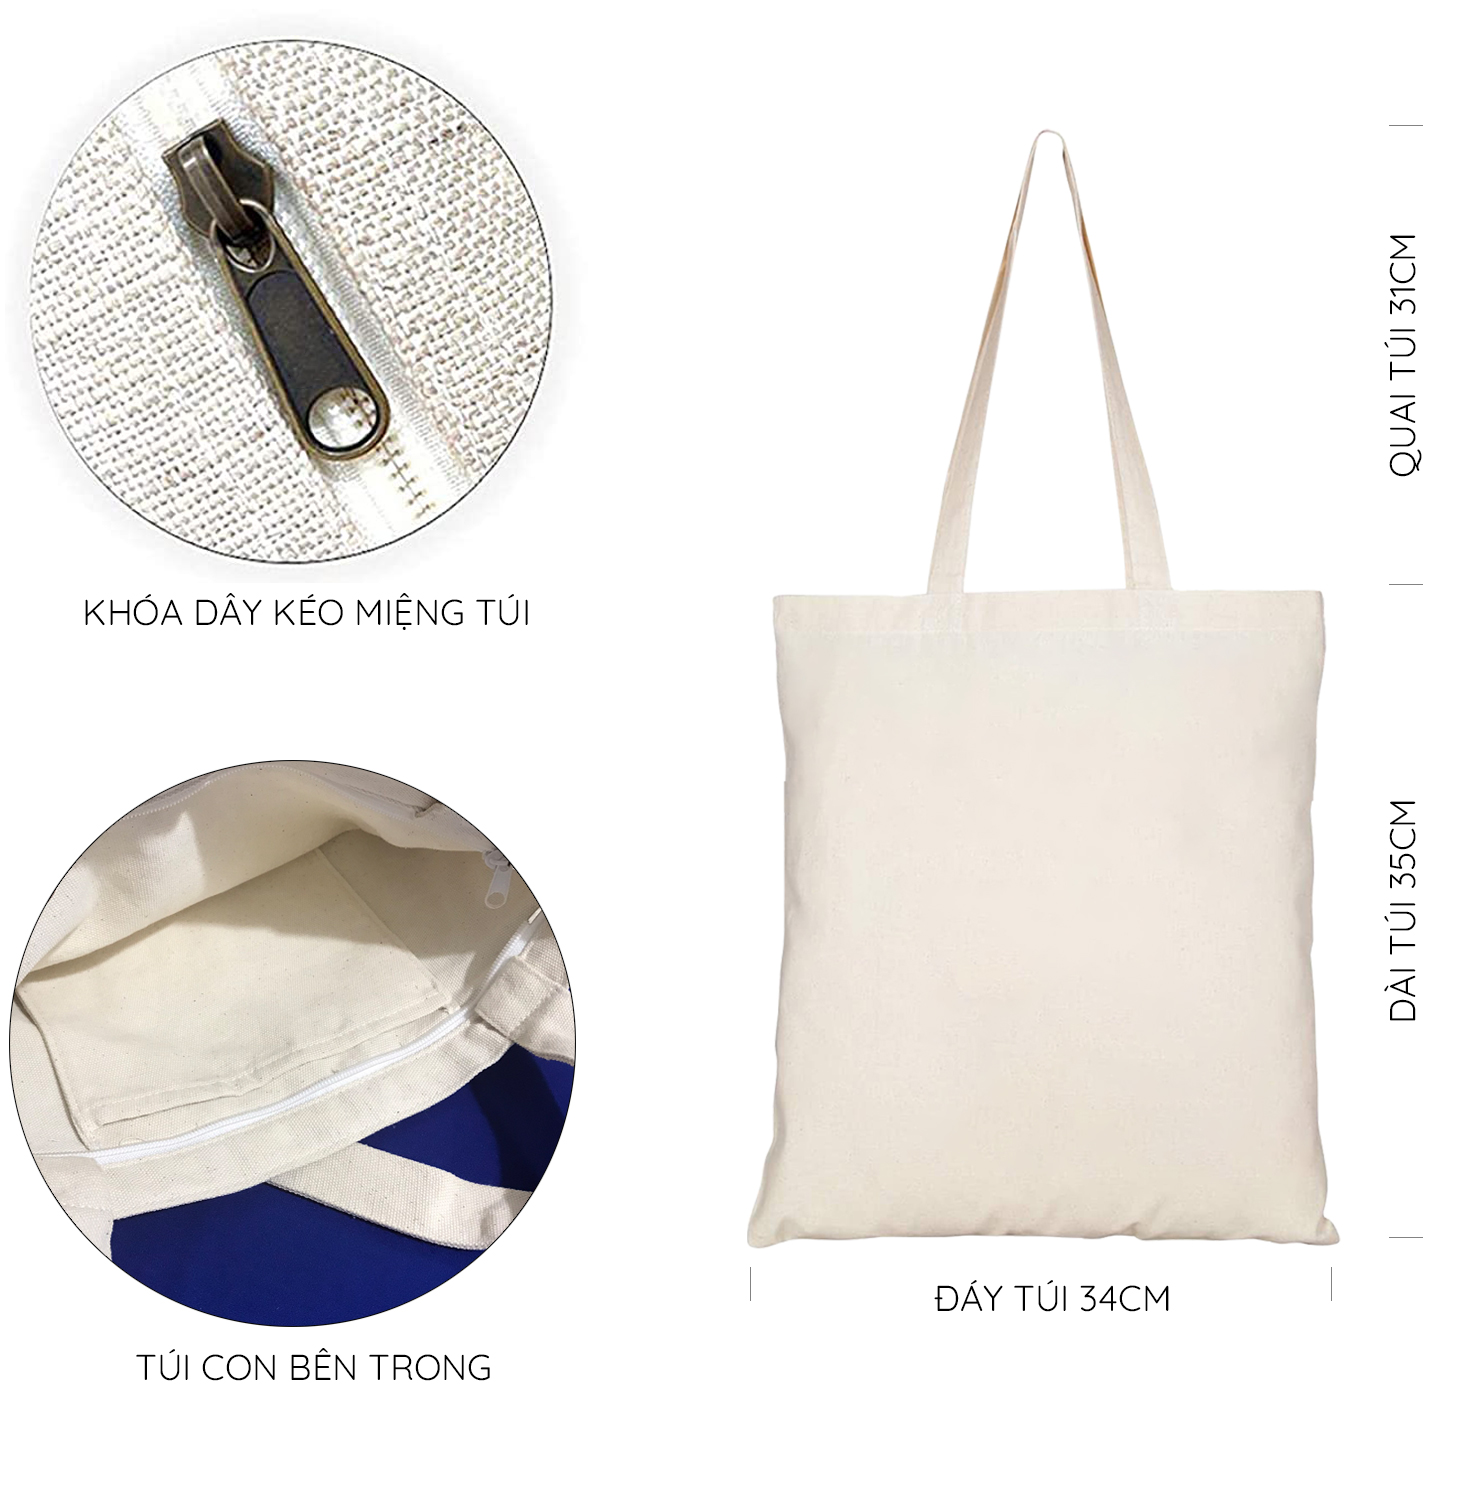 Túi Tote Vải Mộc Ginko kiểu basic có dây kéo khóa miệng túi( có túi con bên trong) đựng vừa laptop 14 inch và nhiều đồ dùng khác In Hình START TODAY WITH A GRATEFUL HEART M36